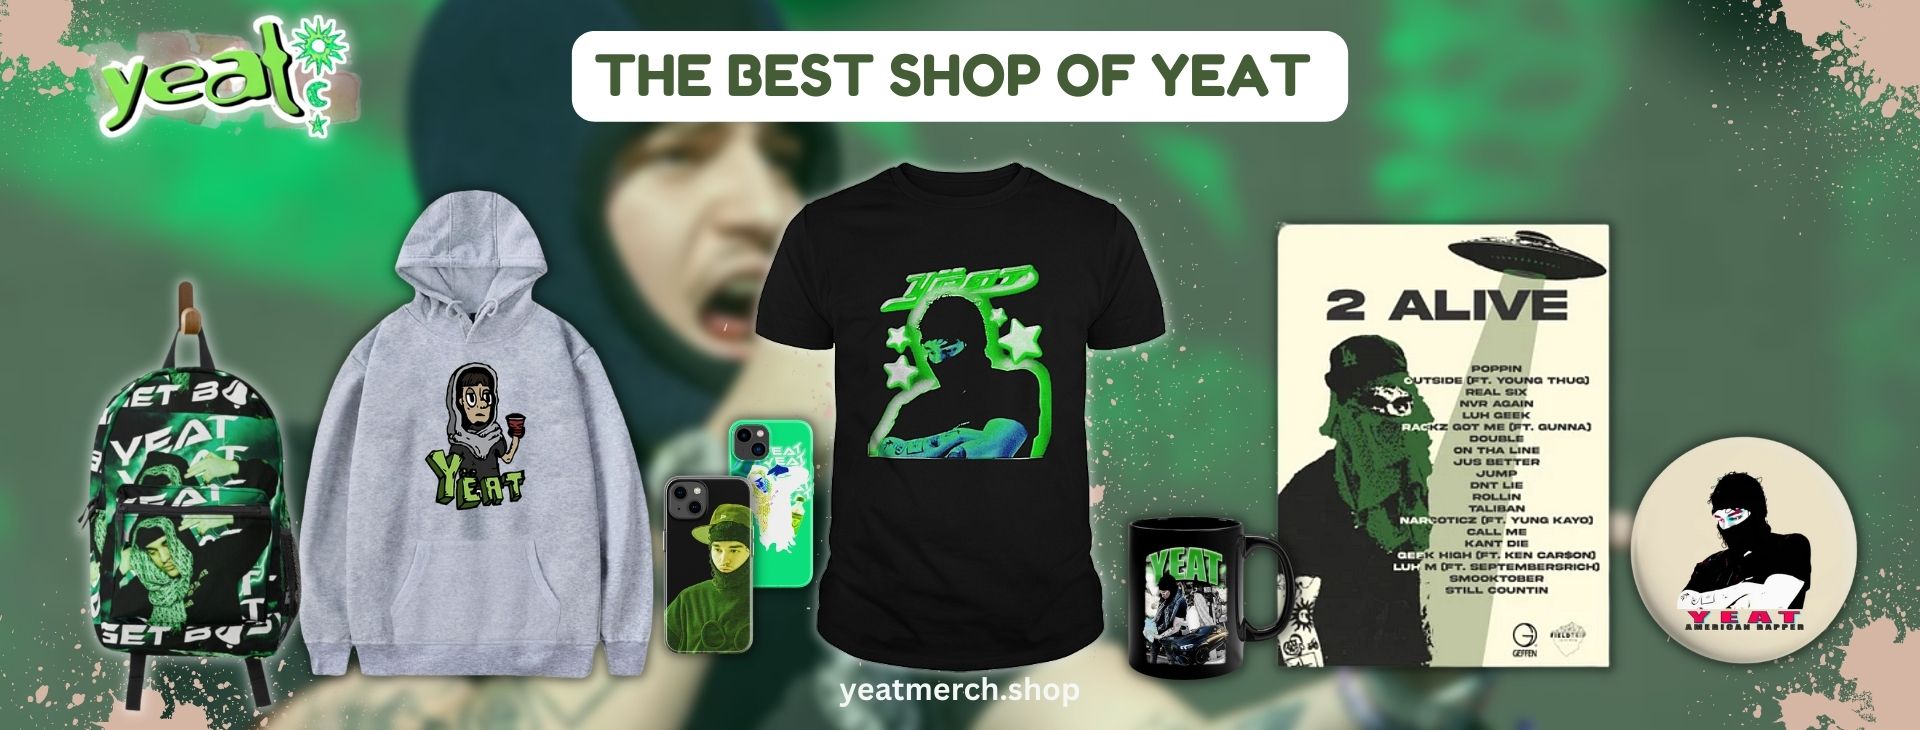 Yeat Store Banner - Yeat Merch